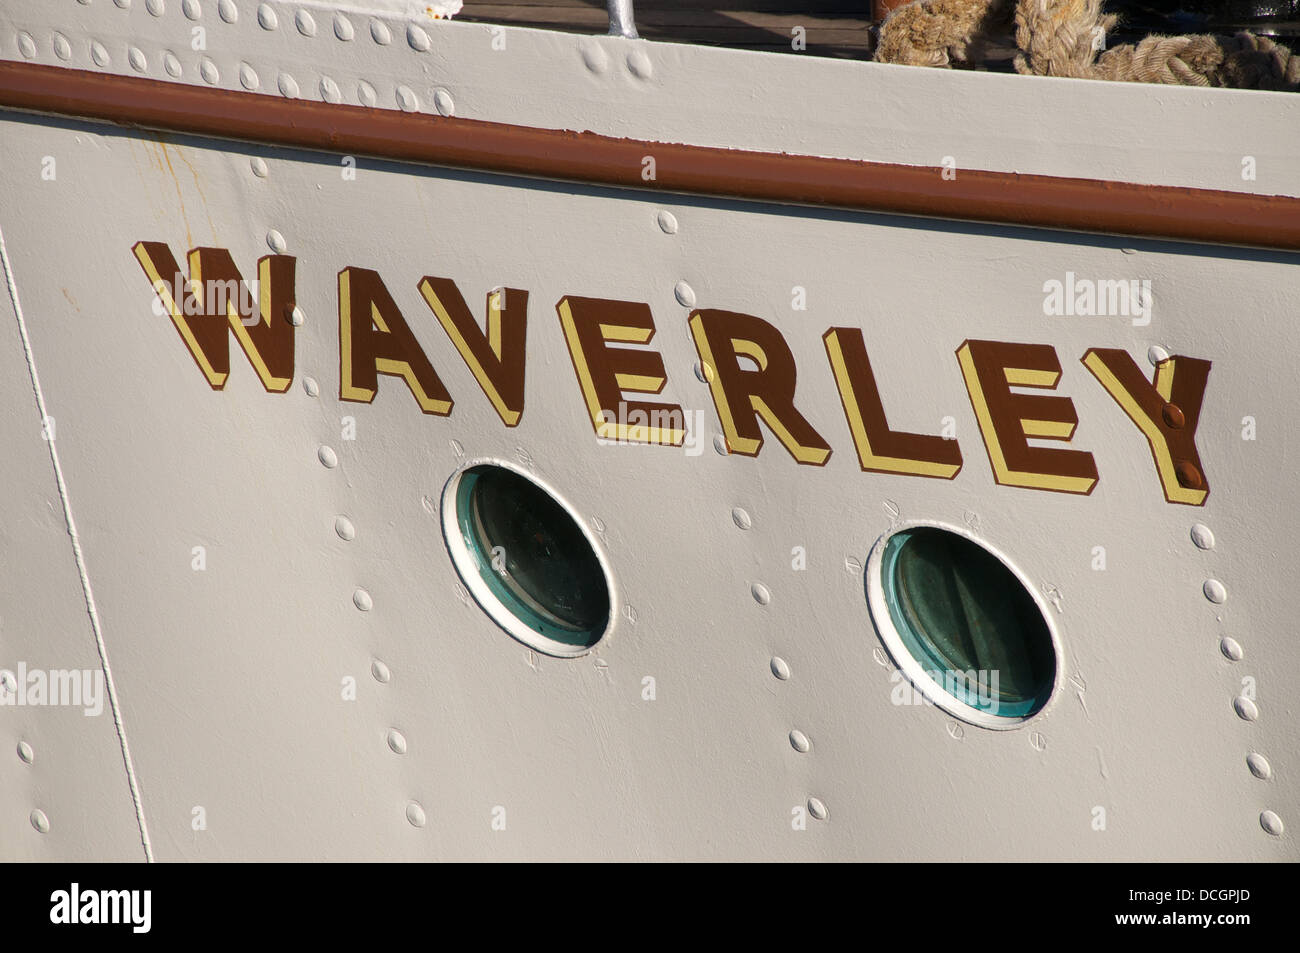 Die Waverley im dock in Glasgow Schottland, zeigt Detail handbemalt Name auf dem Bug Stockfoto